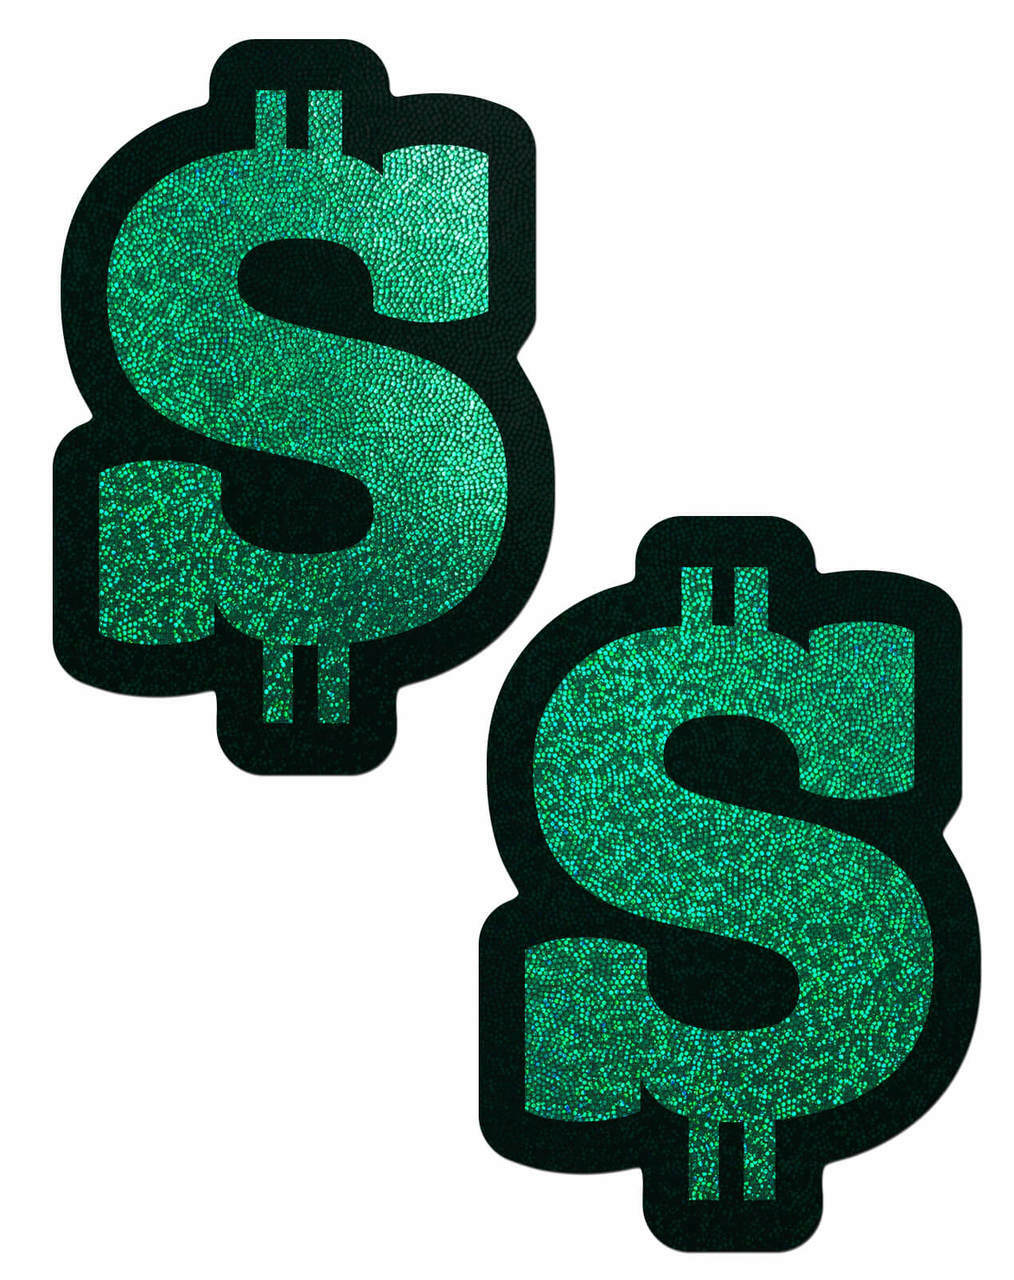 green dollar signs clip art